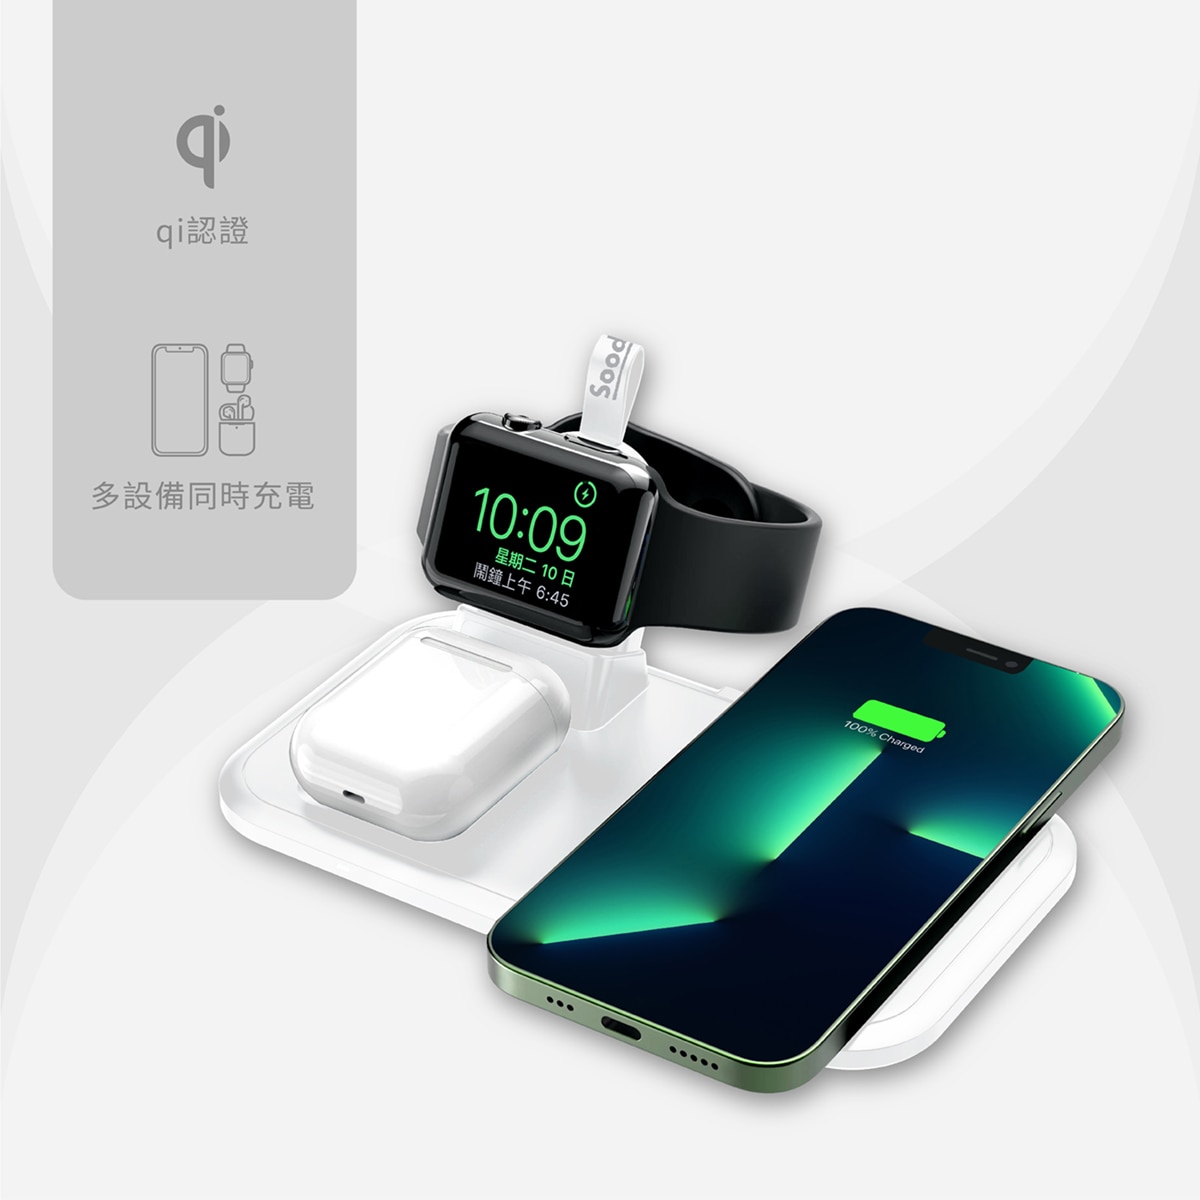 Soodatek蘋果Watch認證，多合一設計可同時為多種設備充電，隨放即充，快速方便。